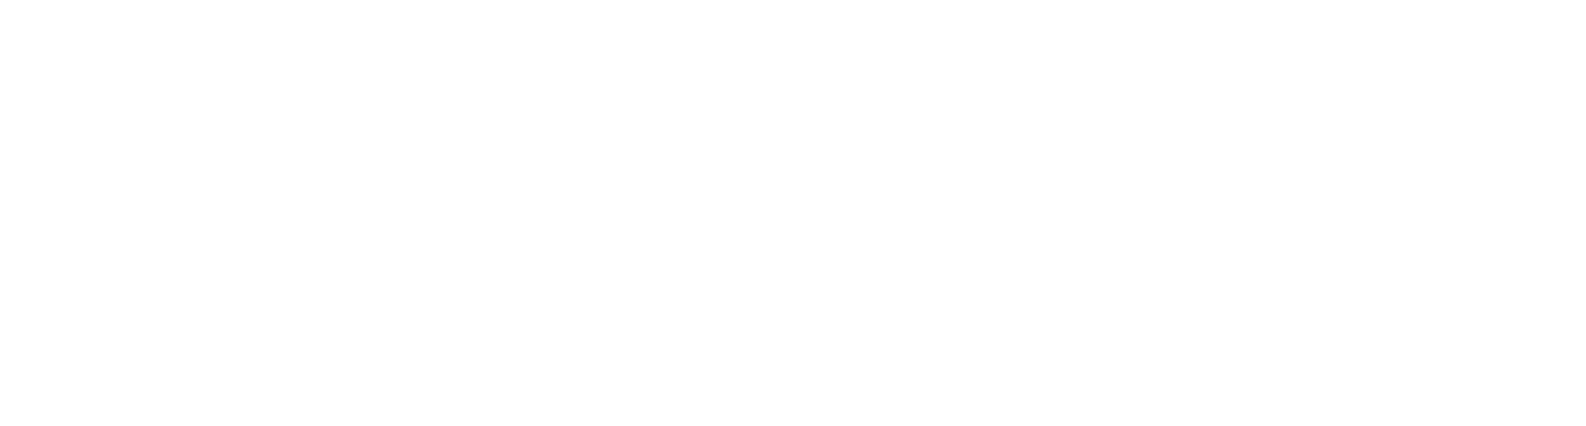 Cleanaway Waste Management logo large for dark backgrounds (transparent PNG)